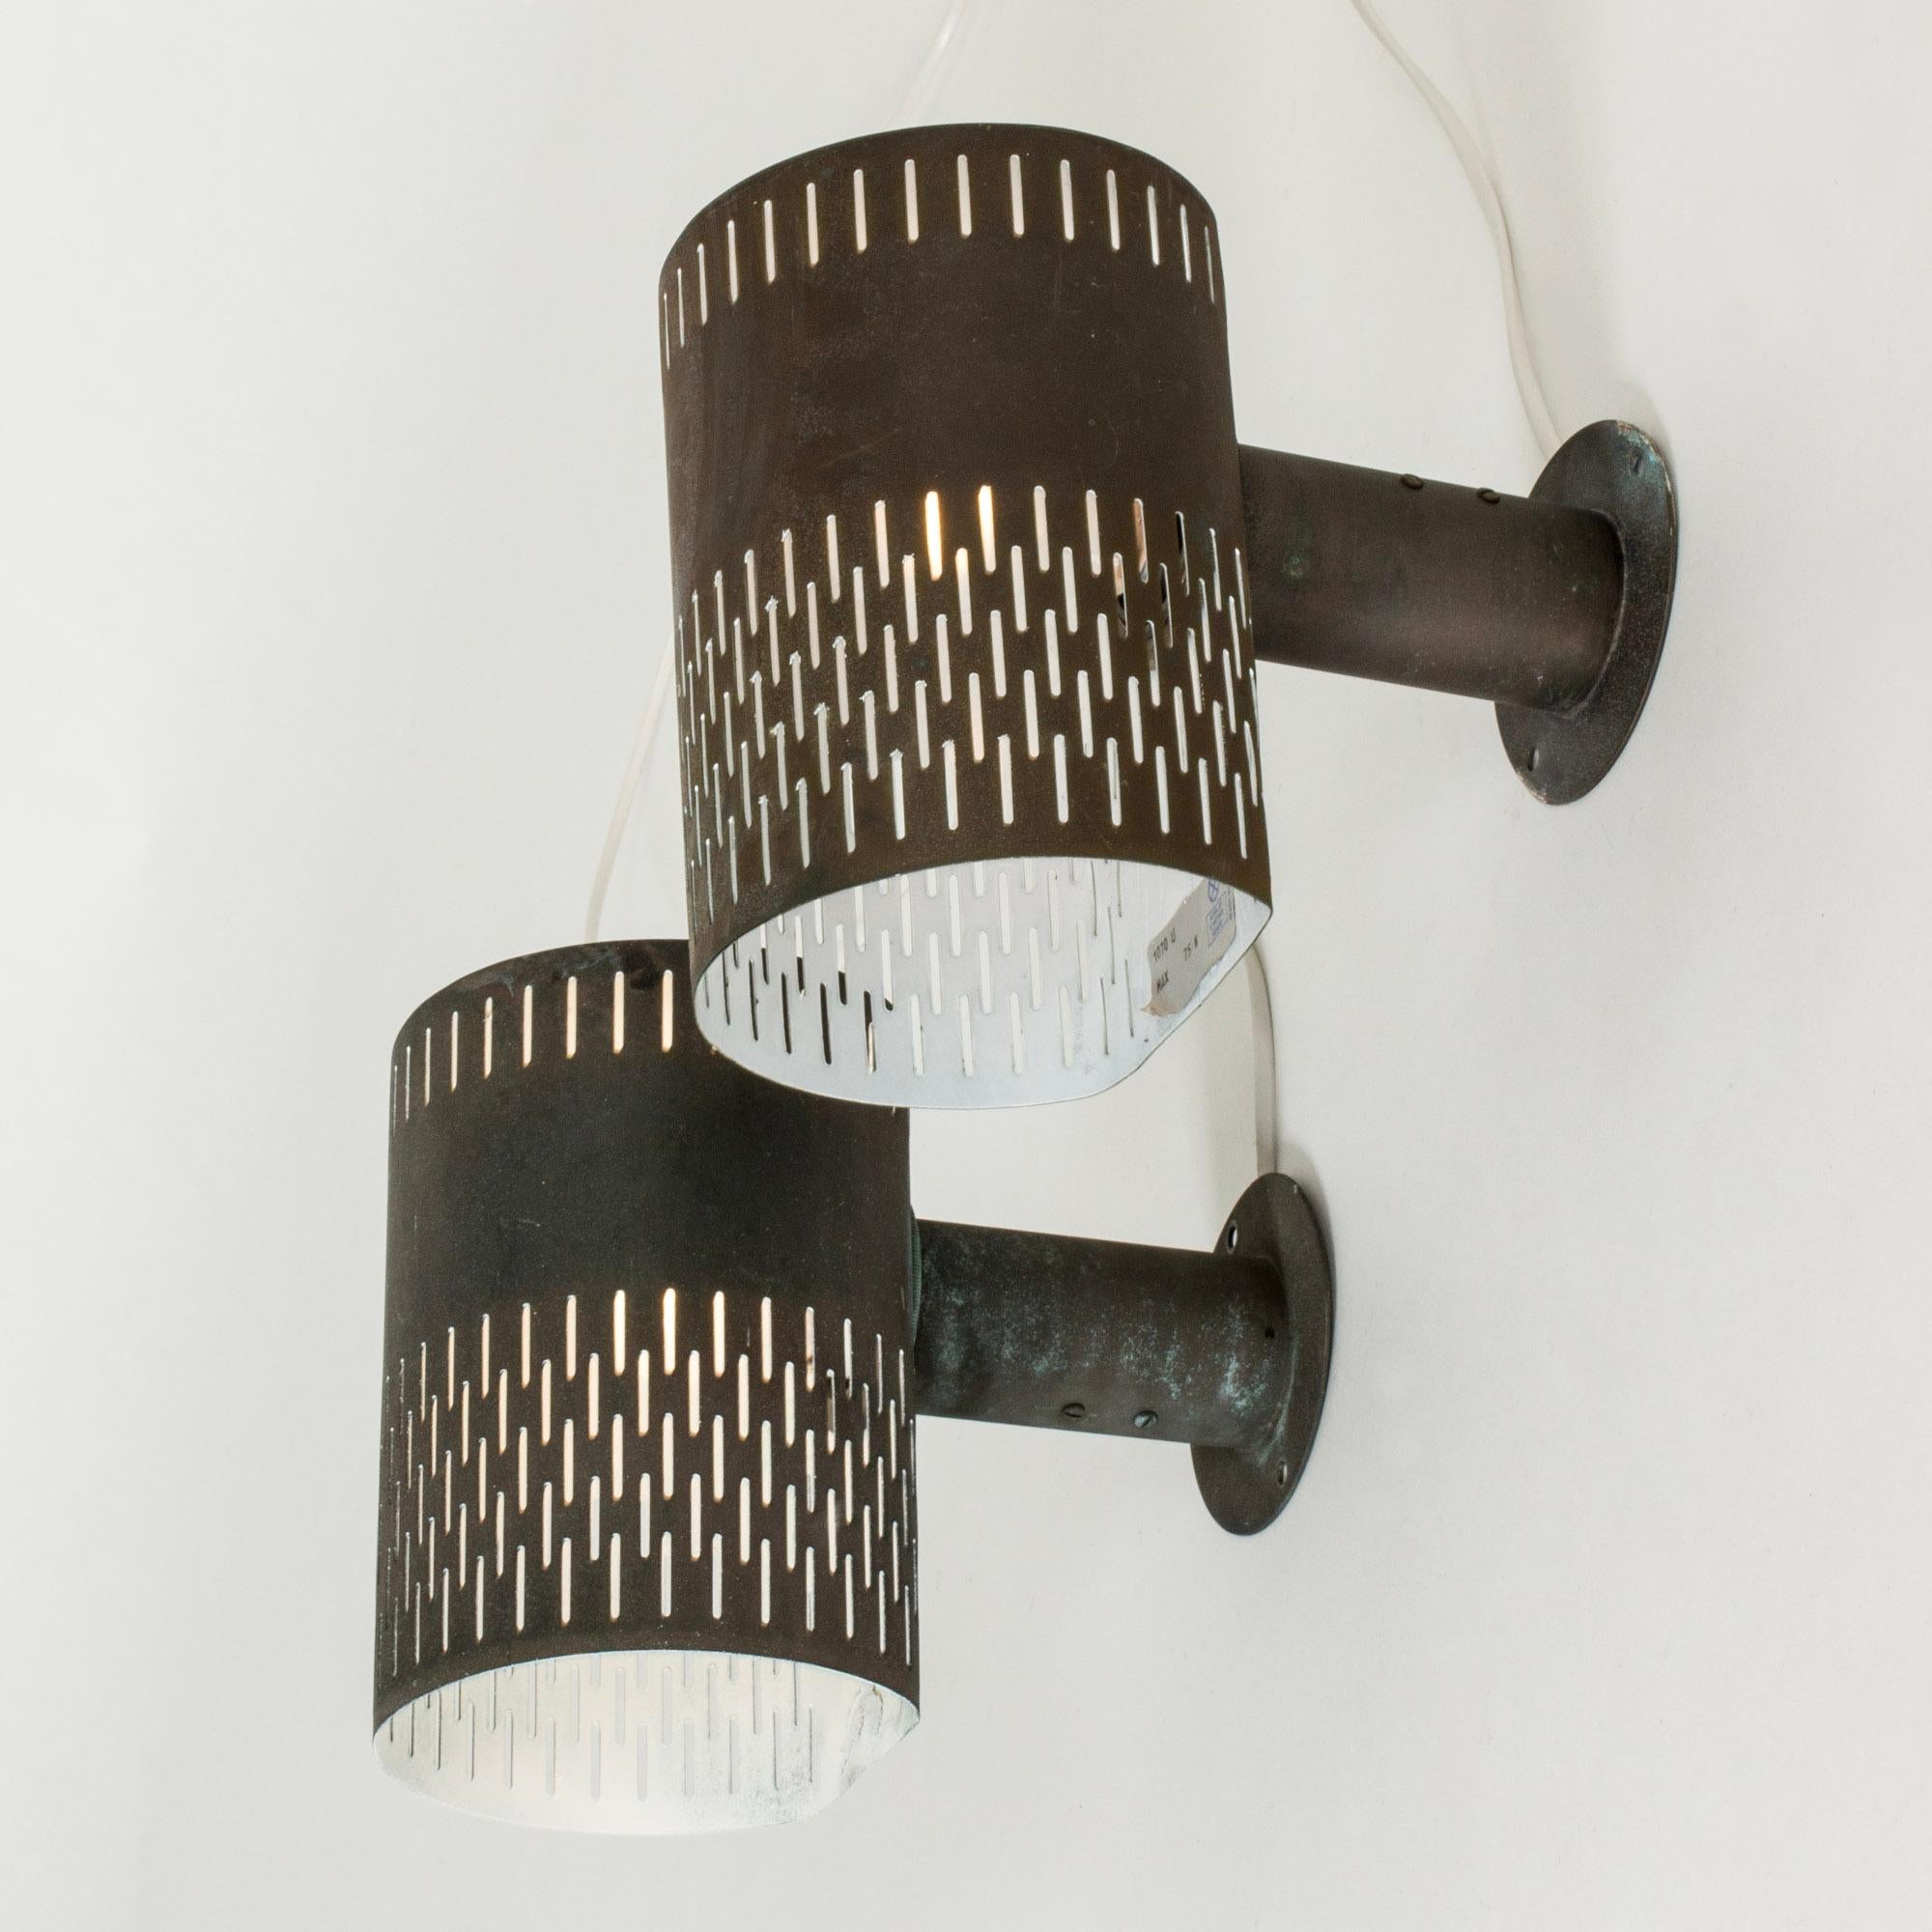 Sehr cooles Paar Wandleuchten von Hans Bergström, aus Kupfer gefertigt. Zylinderformen mit einem ausgeschnittenen grafischen Muster.

Neu verkabelt, muss aber von einem Elektriker installiert werden, wenn es im Freien montiert wird.

Hans Bergström